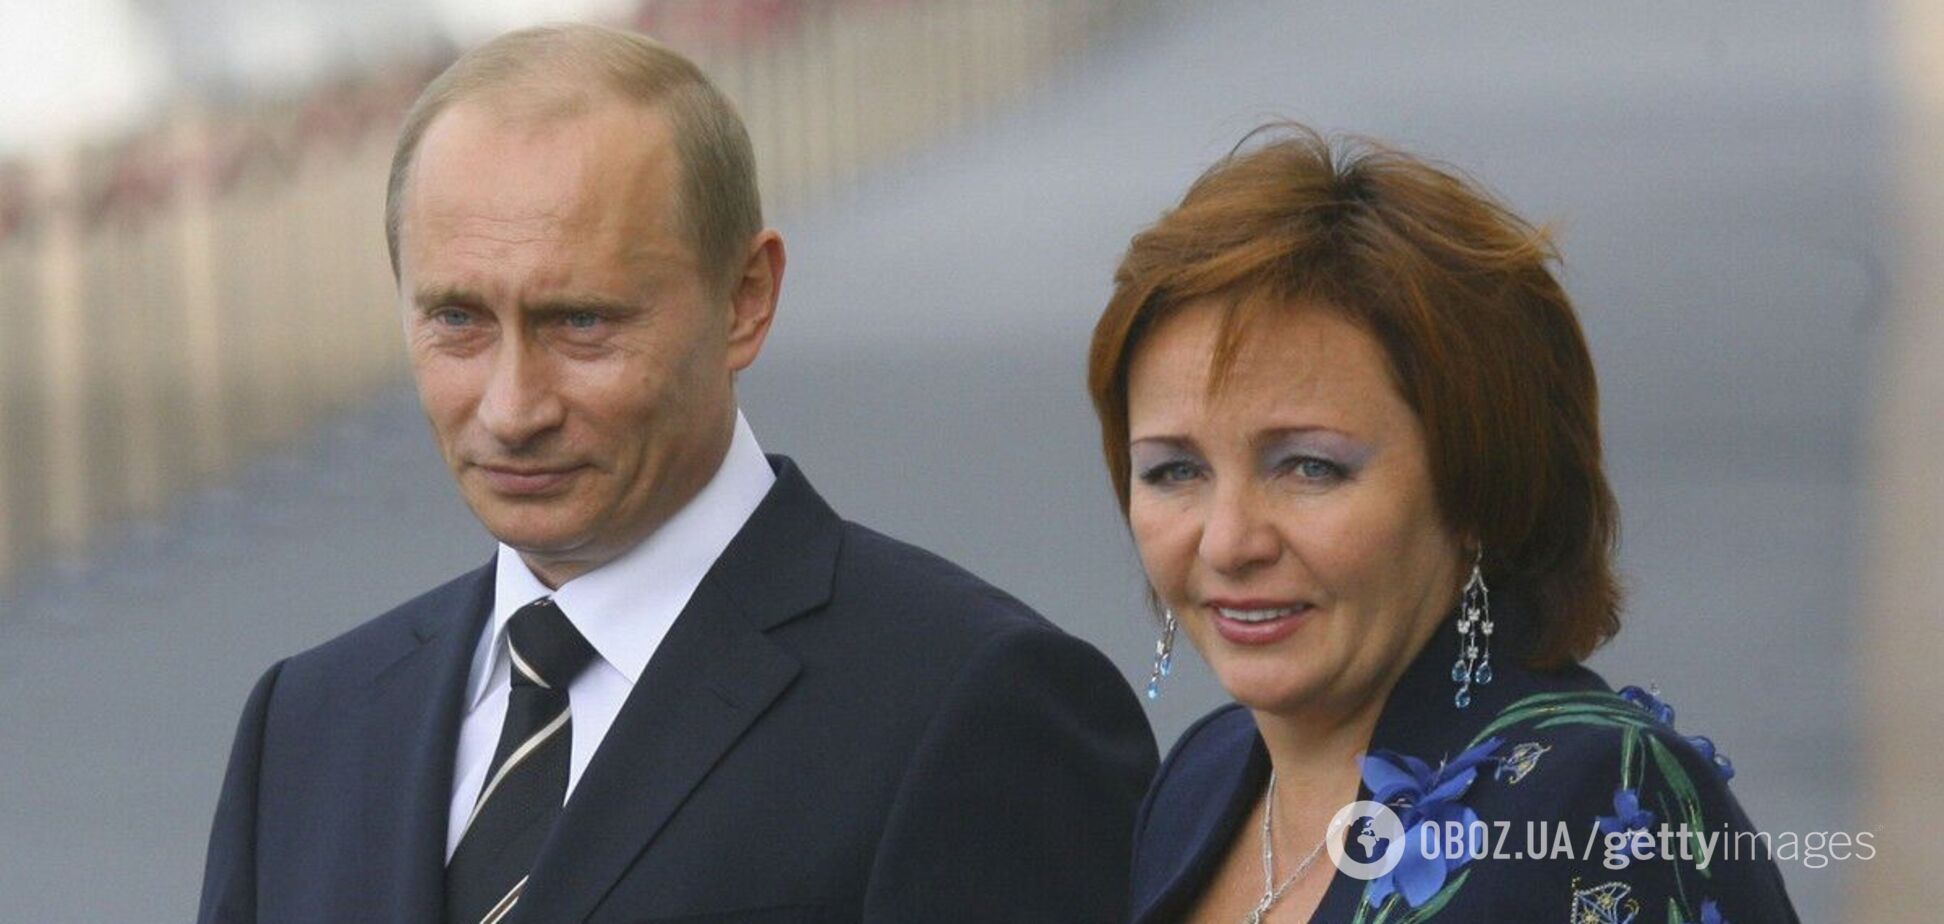 Как Путин 'отфотошопил' жену Людмилу из истории после развода в 2013 году. Всплыли подробности